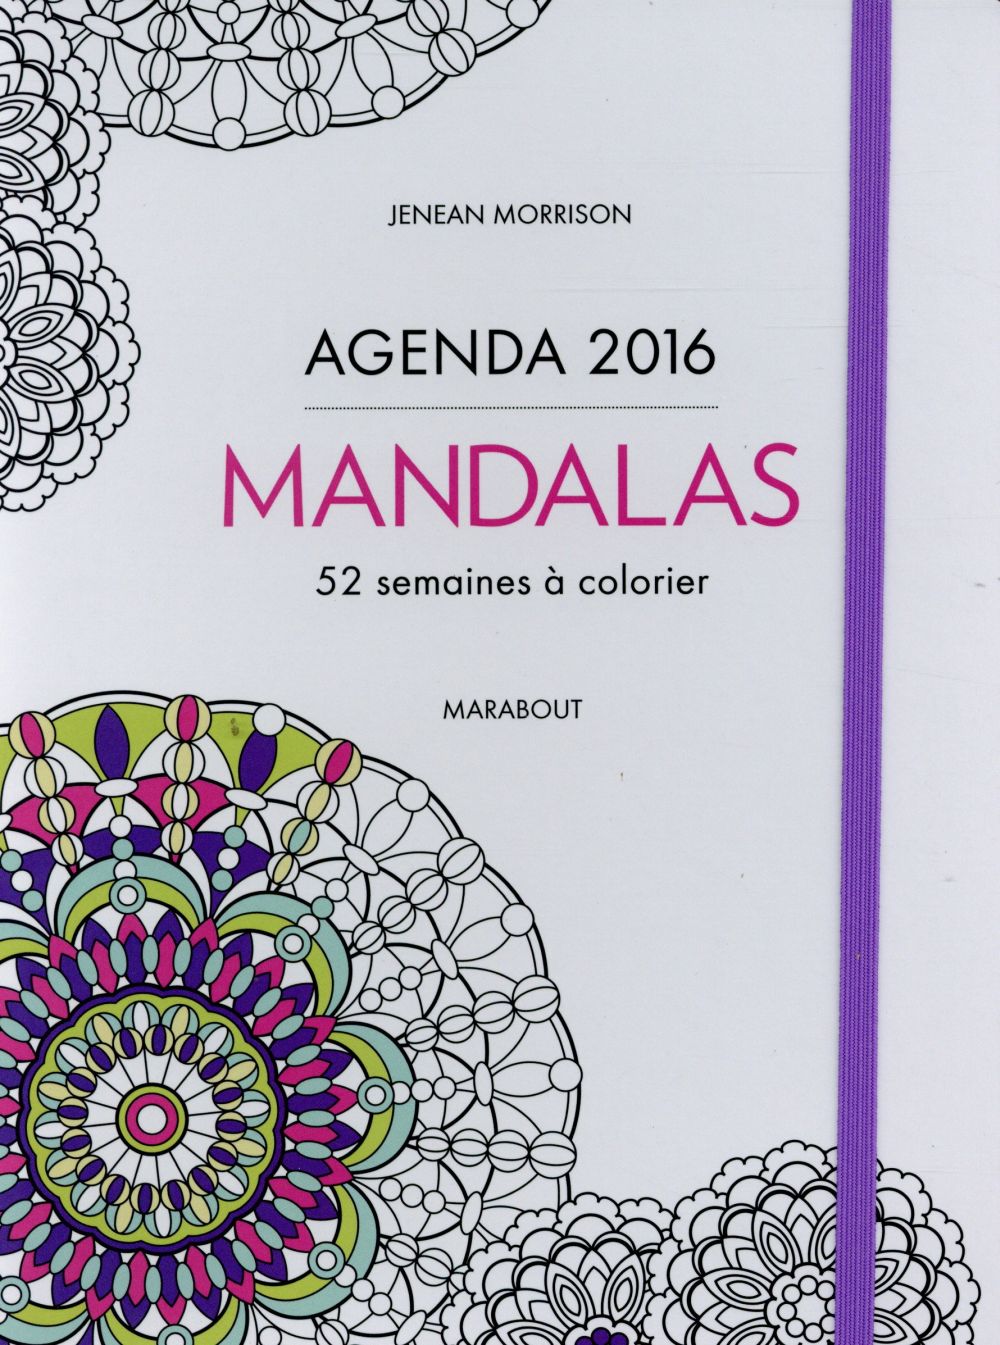 AGENDA 2016 MANDALAS